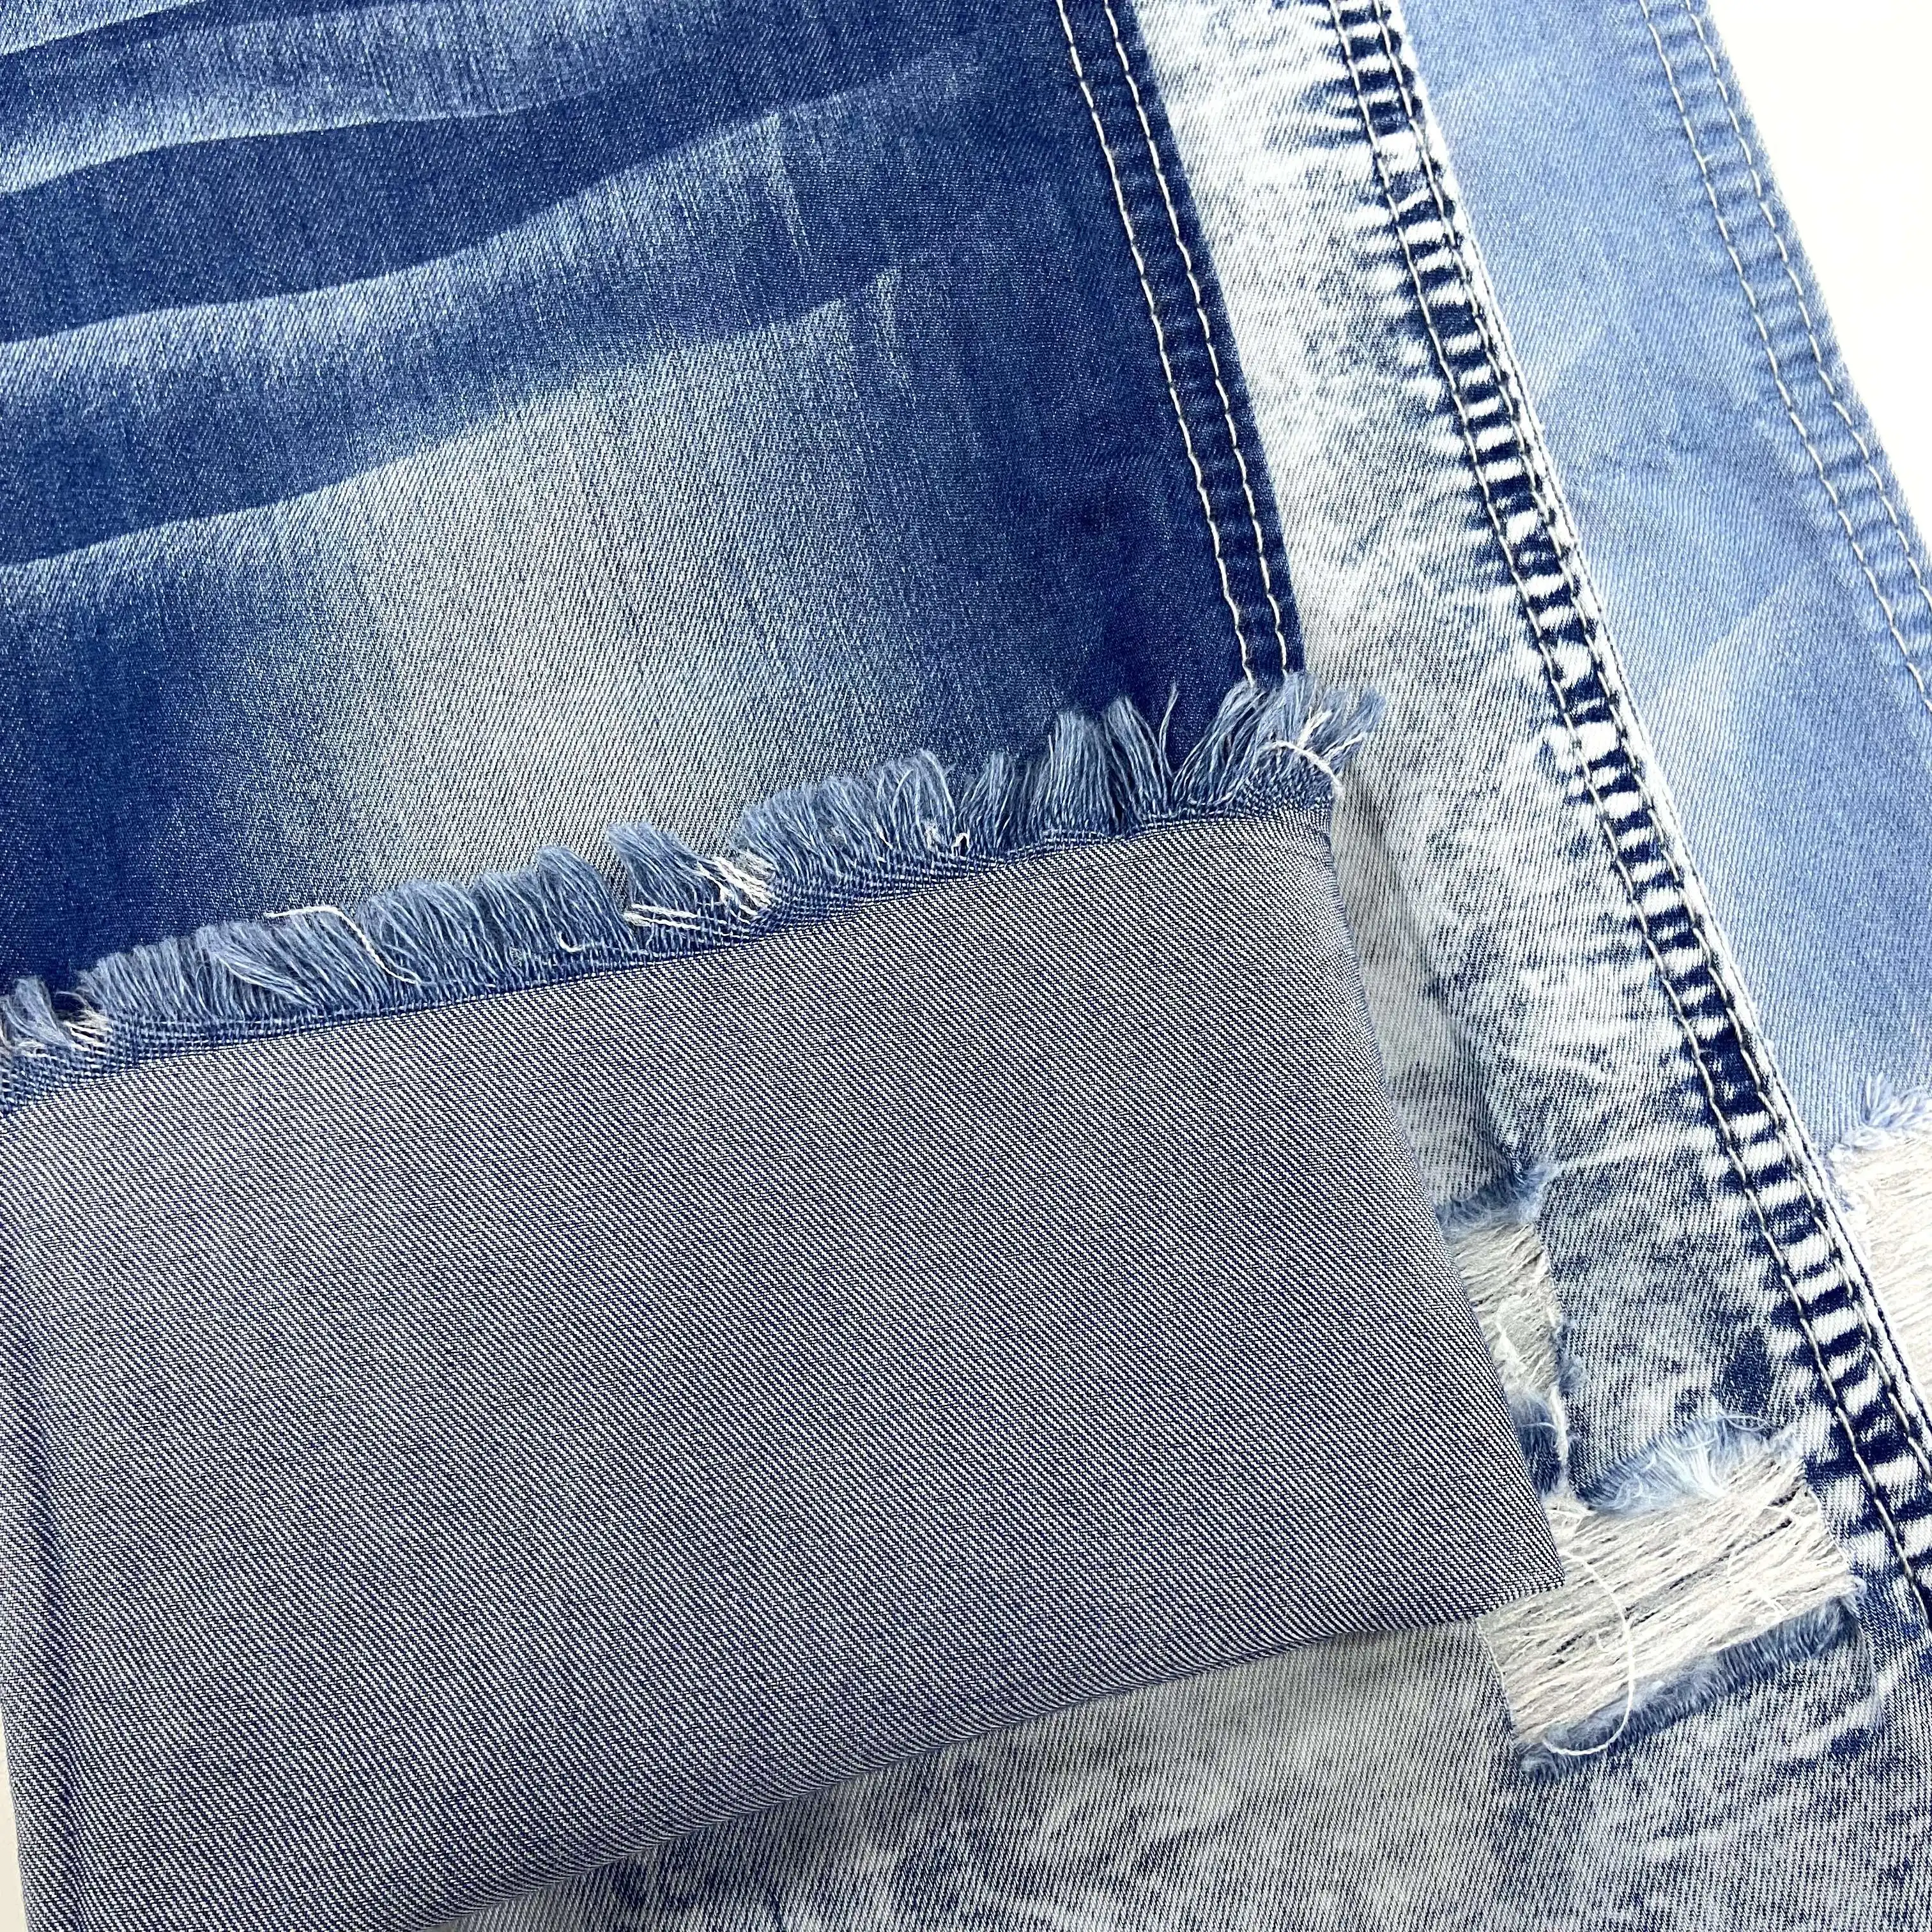 Stock granel personalizado luz de las mujeres Jeans Indigo blanco impreso piedra tela lavado desgastado cera Vintage Spandex Algodón elástico Denim